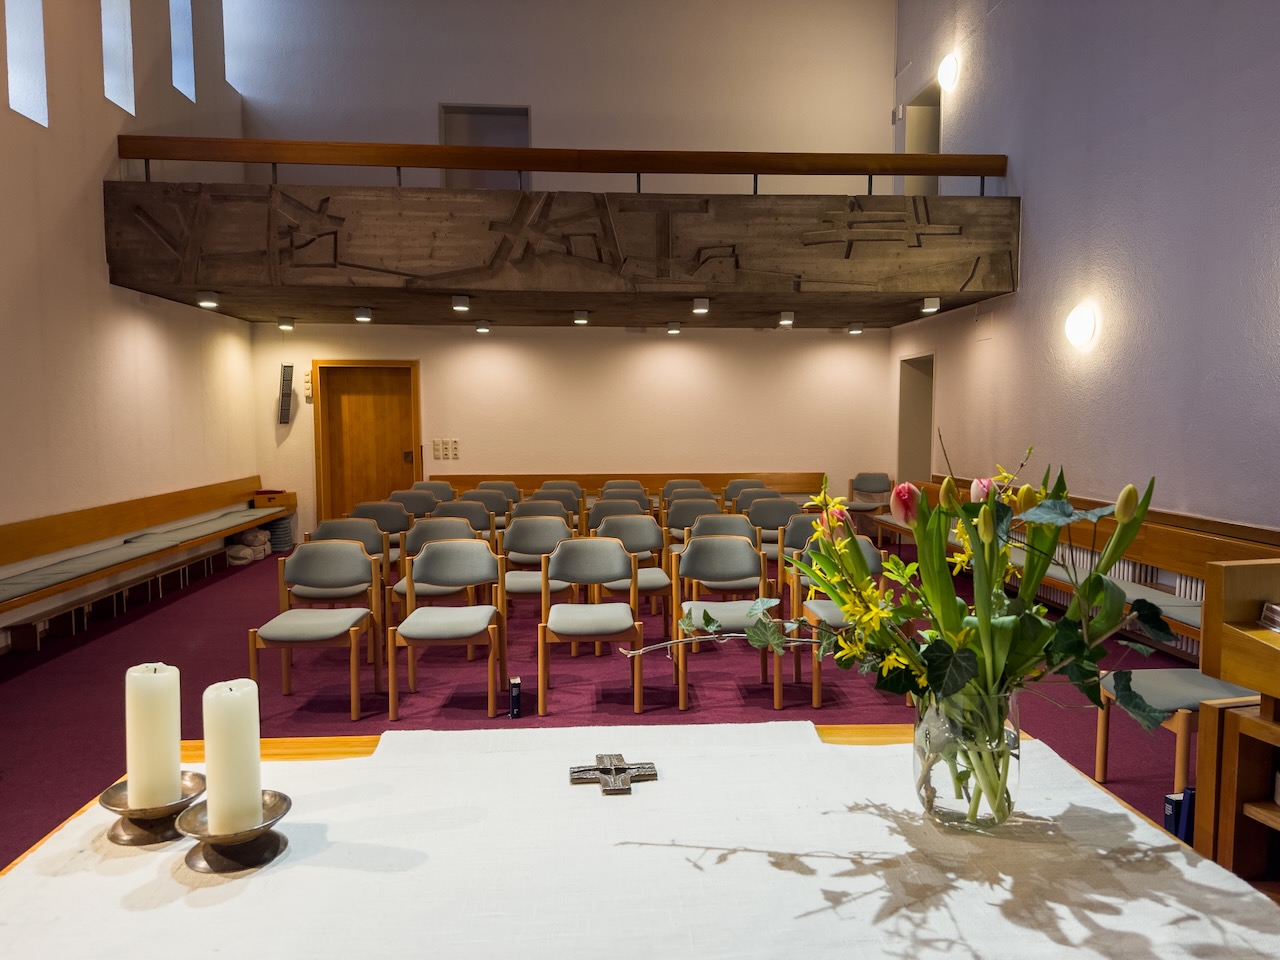 Gästehauskapelle: Innenansicht zur Empore